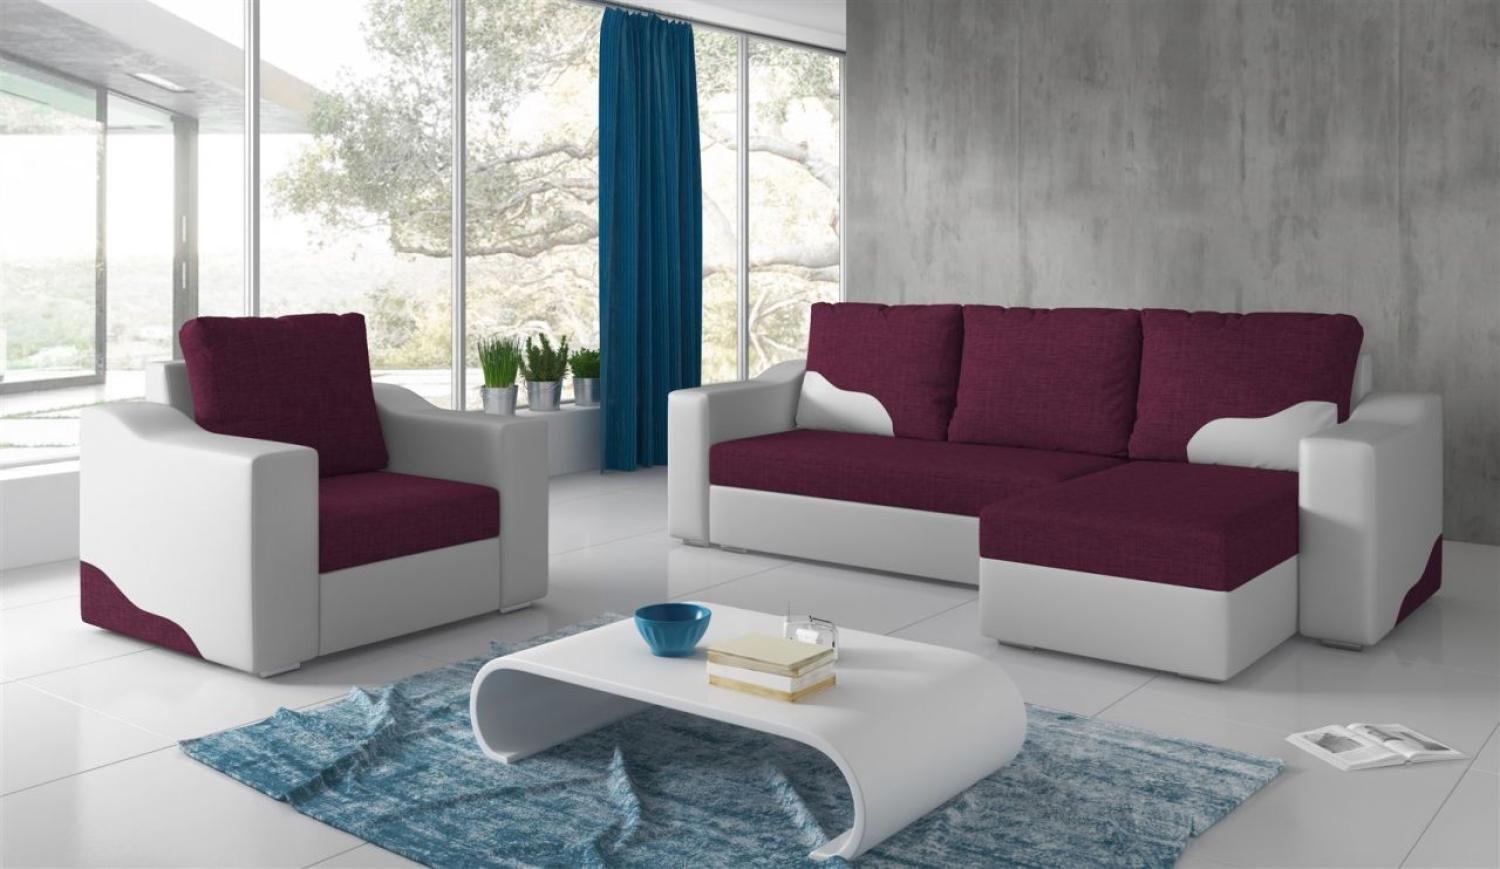 Couchgarnitur COLLIN Ottomane Rechts + Sessel Weiß / Violett Bild 1